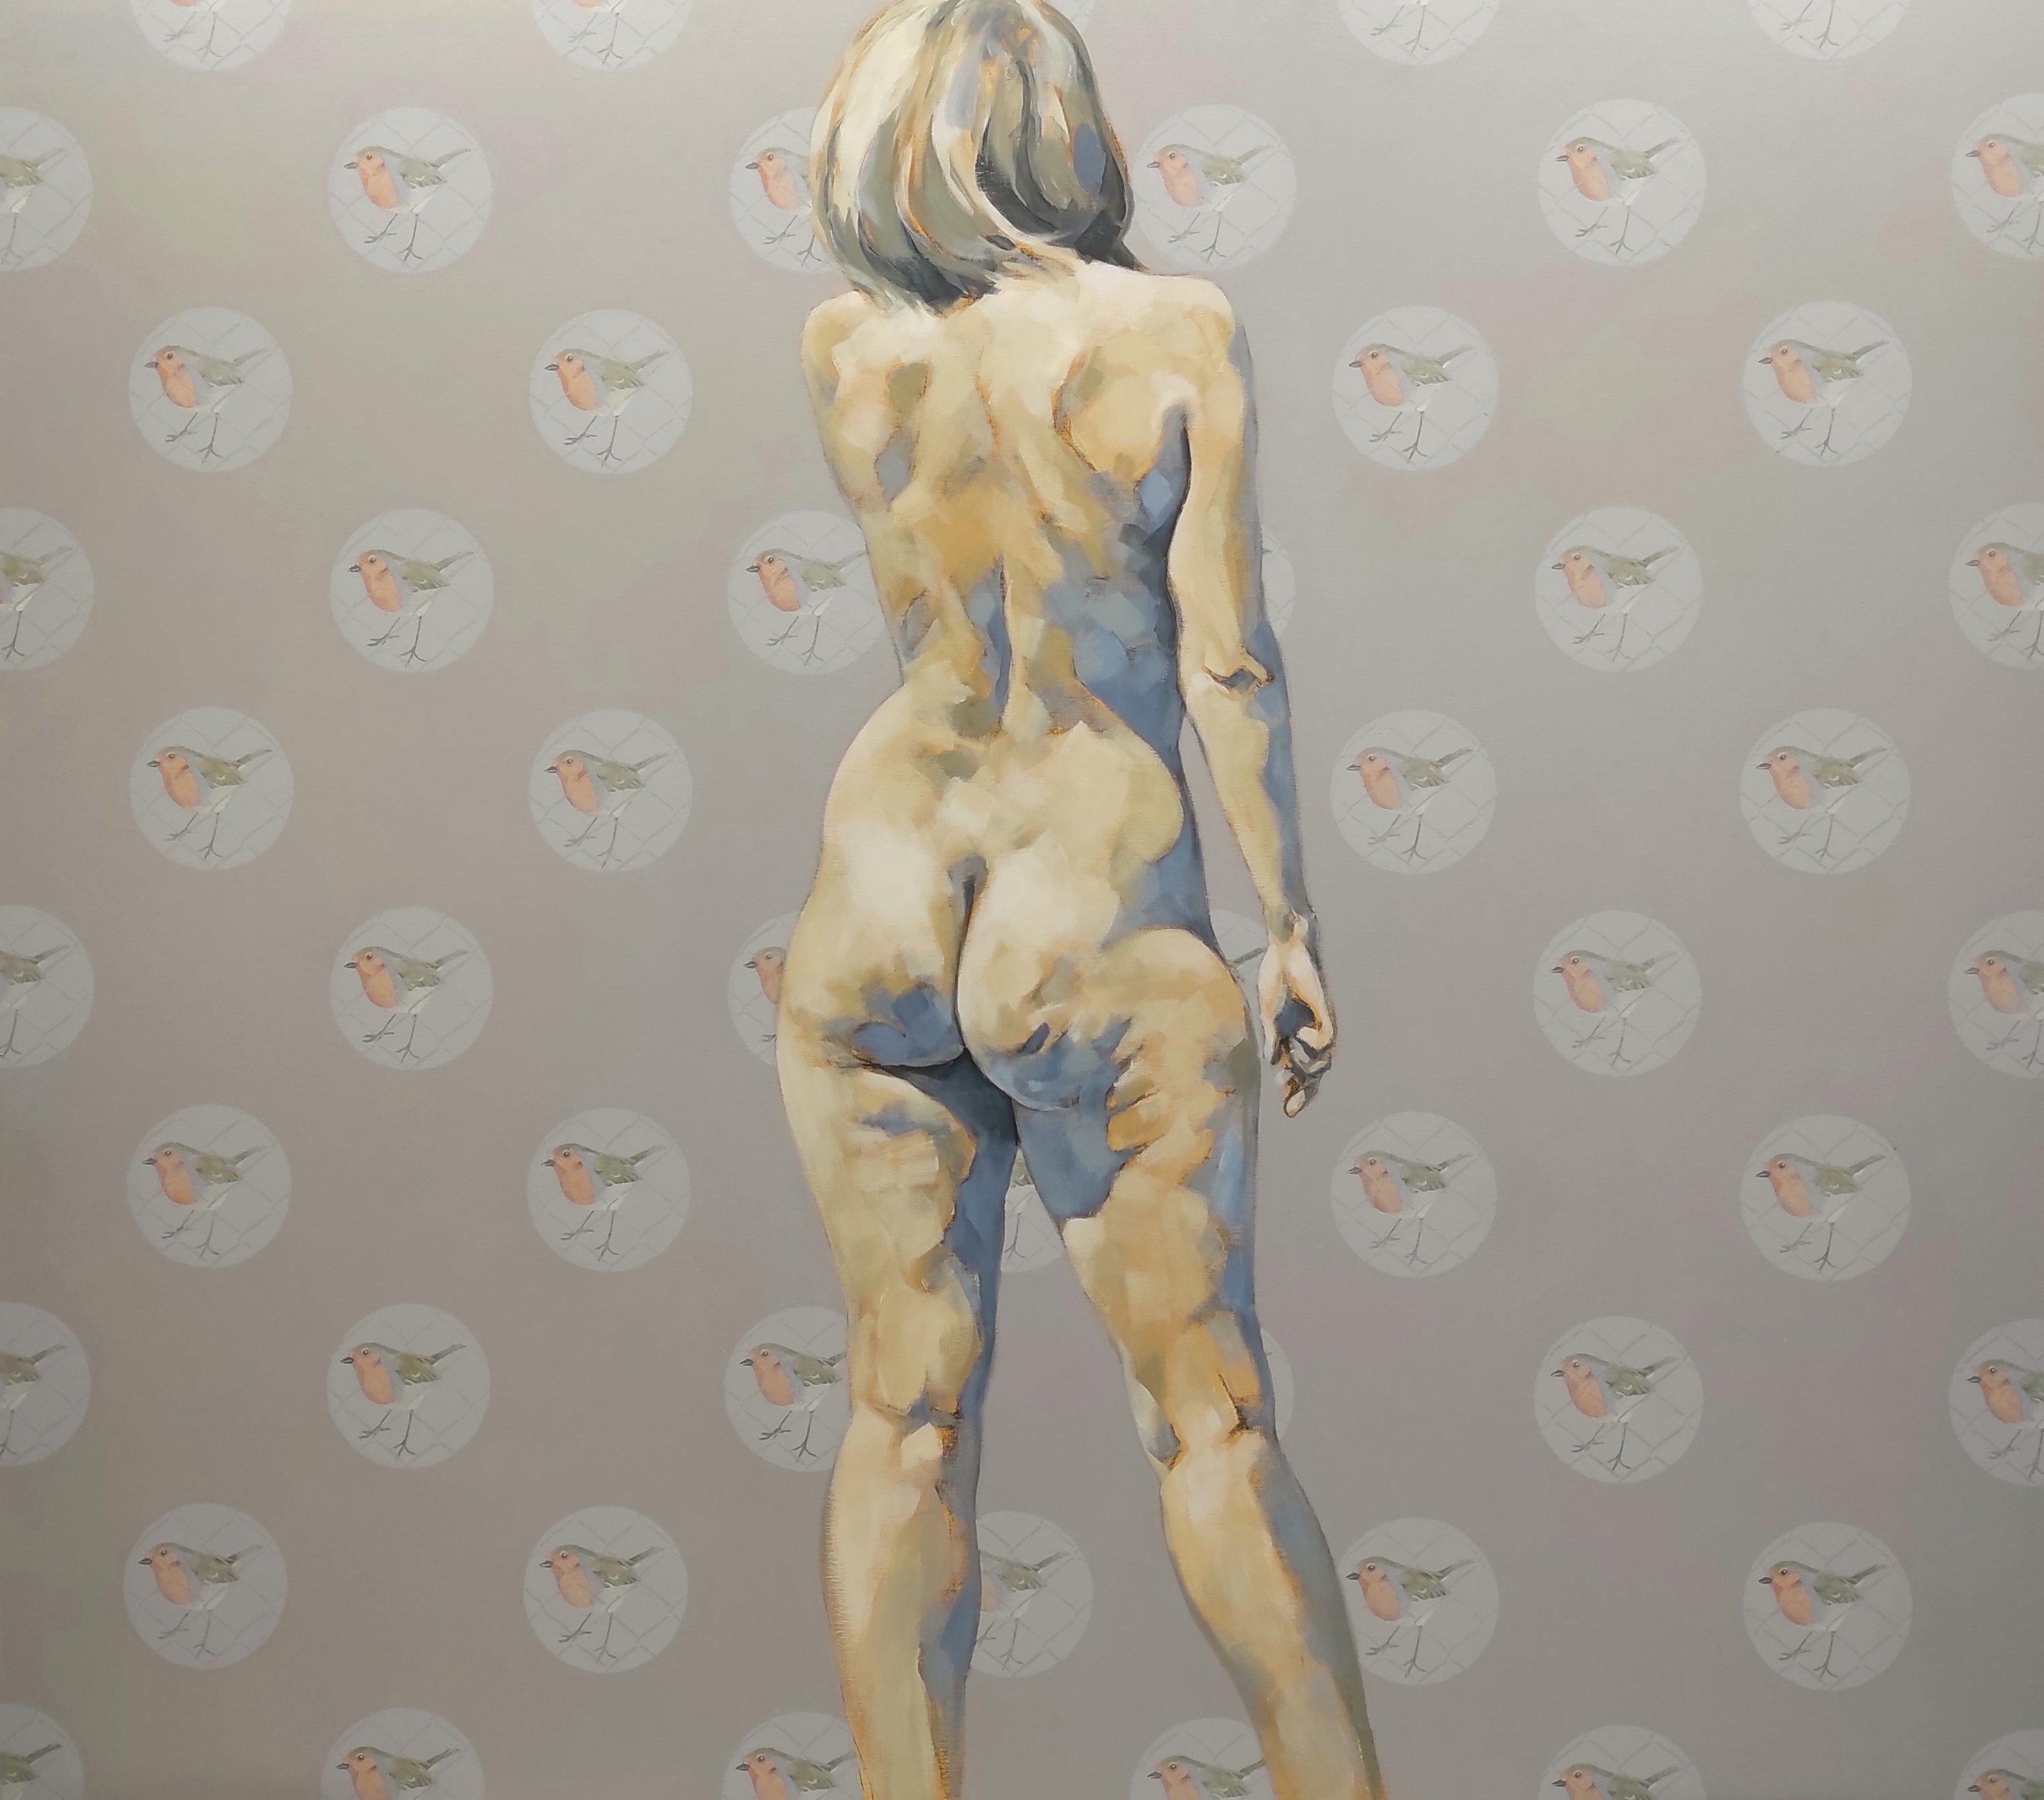 Pep Anton Xaus Nude Painting - Pecho Rojo - 21st Century, Figurative, Nude, Female body, Feminism, Acrylic